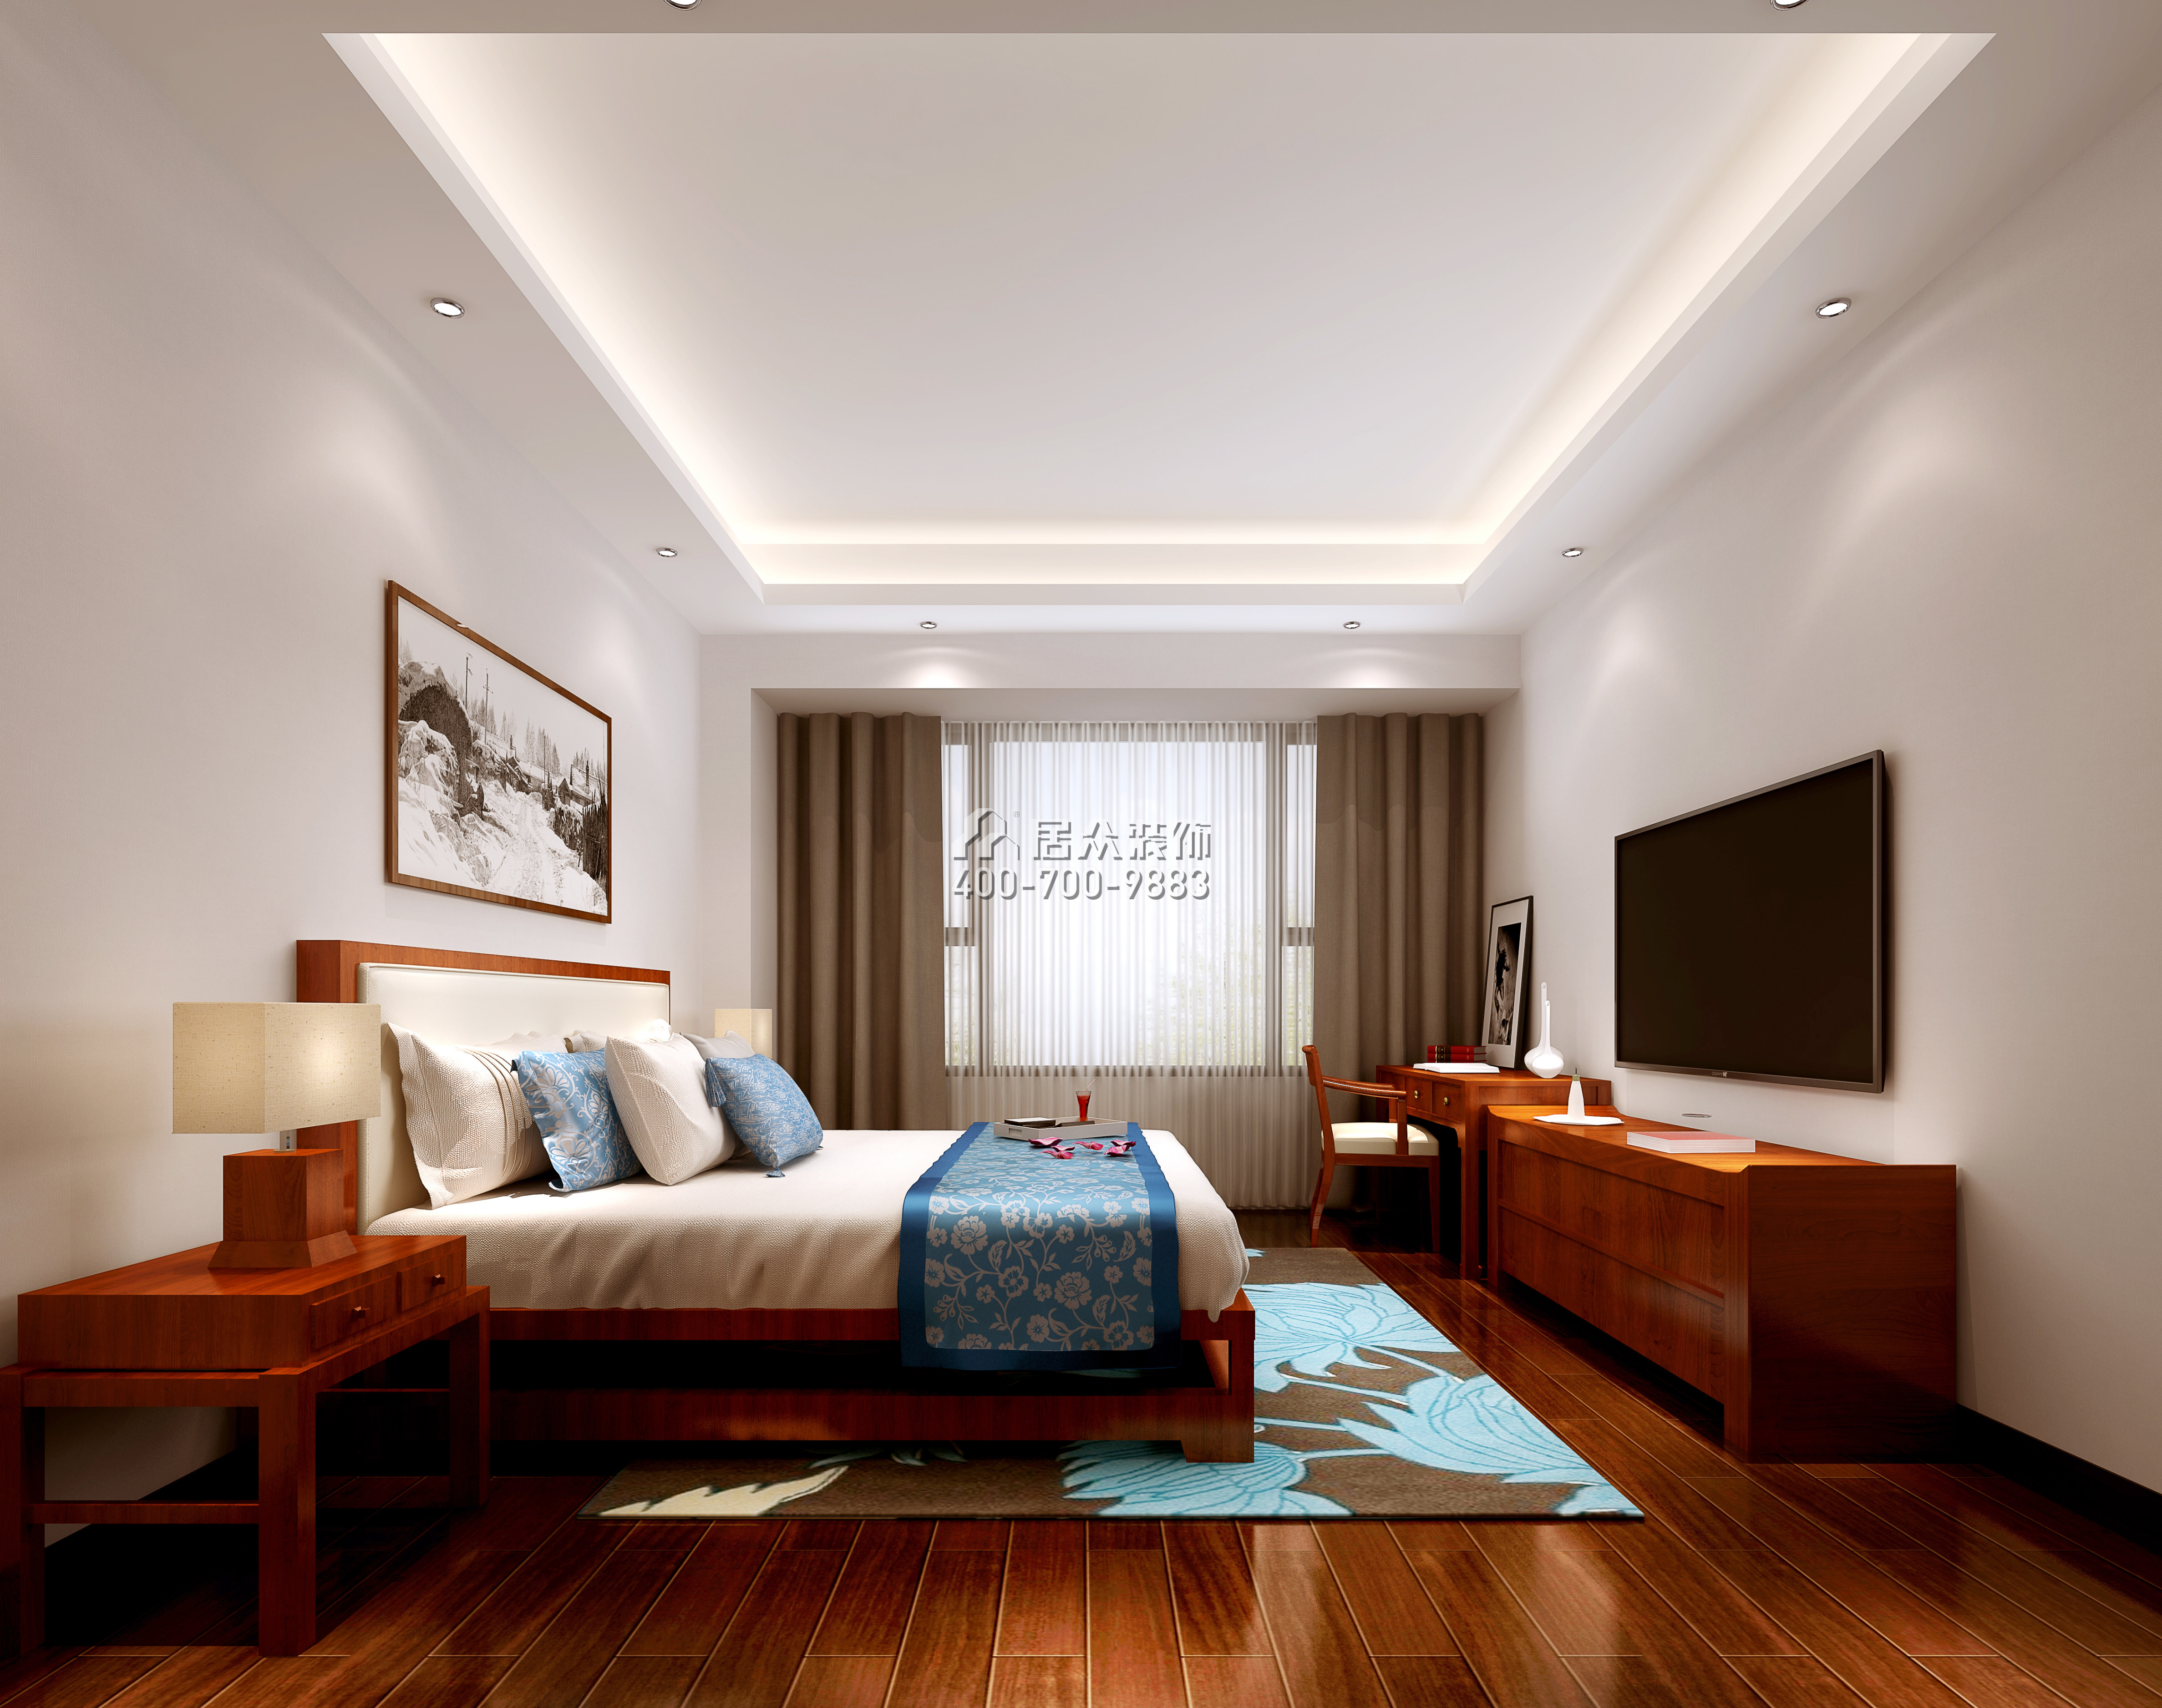 星河丹堤V区136平方米中式风格平层户型卧室装修效果图